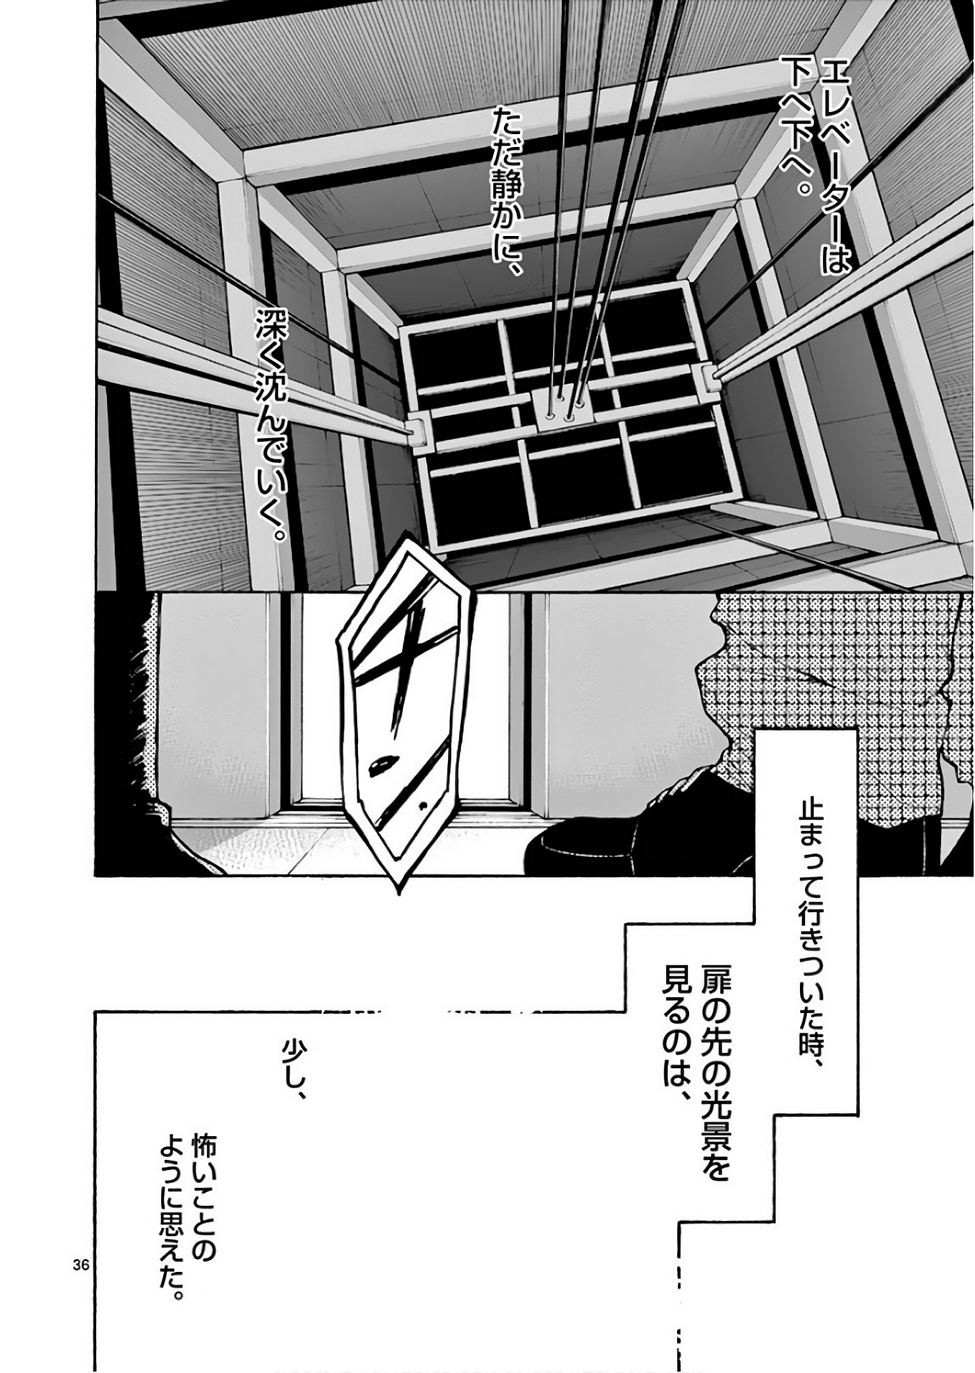 Yahari Ore no Seishun Rabukome wa Machigatte Iru. @ Comic - Chapter 74 - Page 36